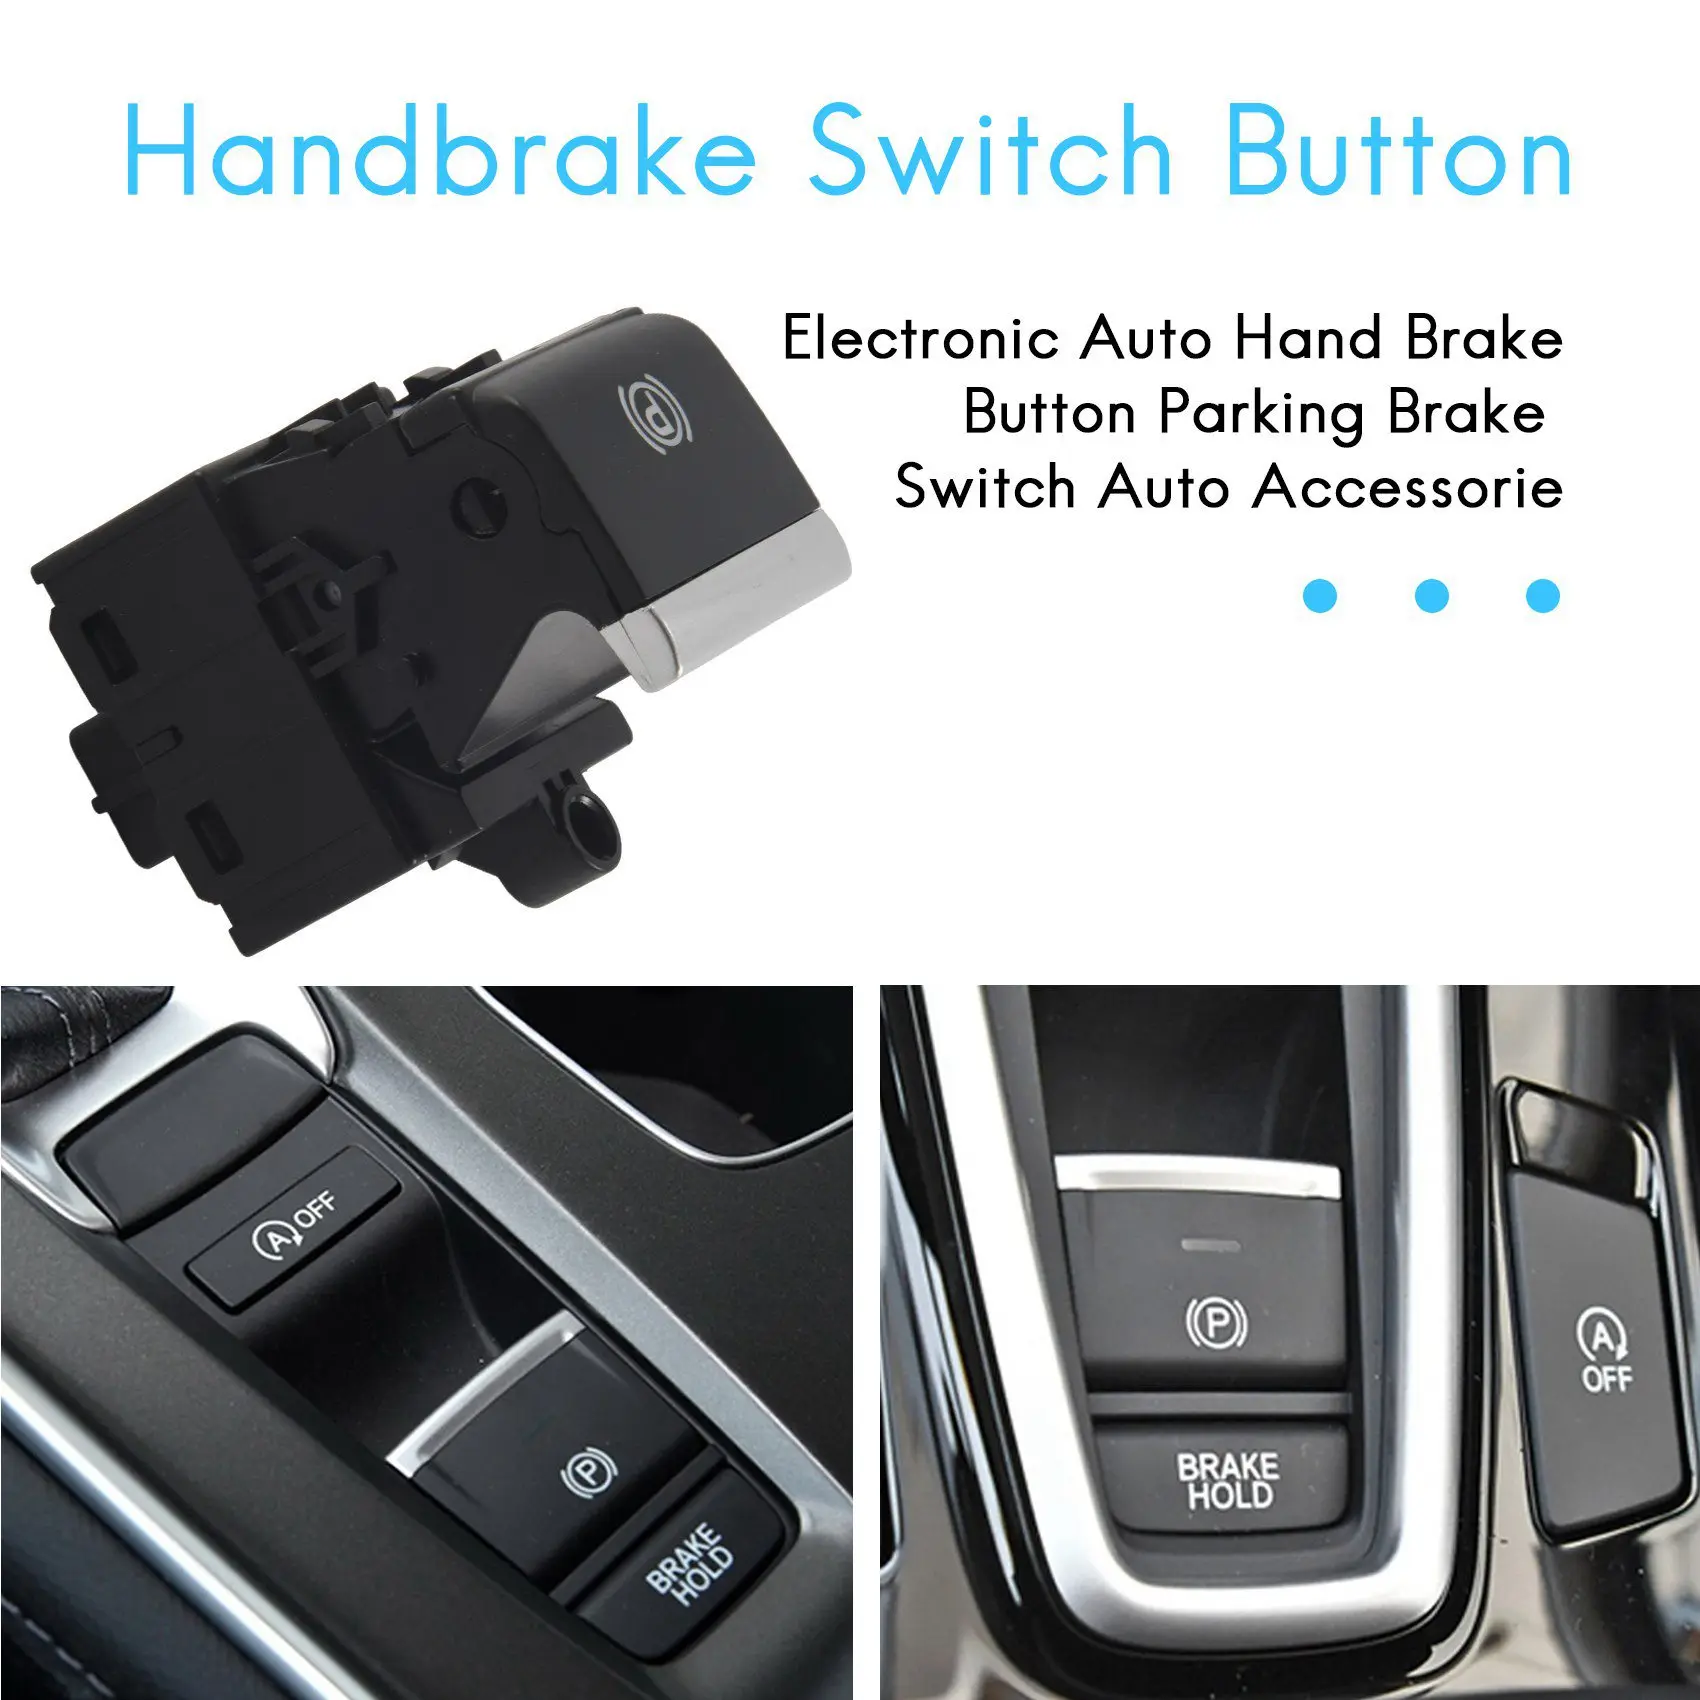 35355--A01 на 2016-2018 Электронный автоматический ручной тормоз, кнопка включения стояночного тормоза, Автоаксессуары